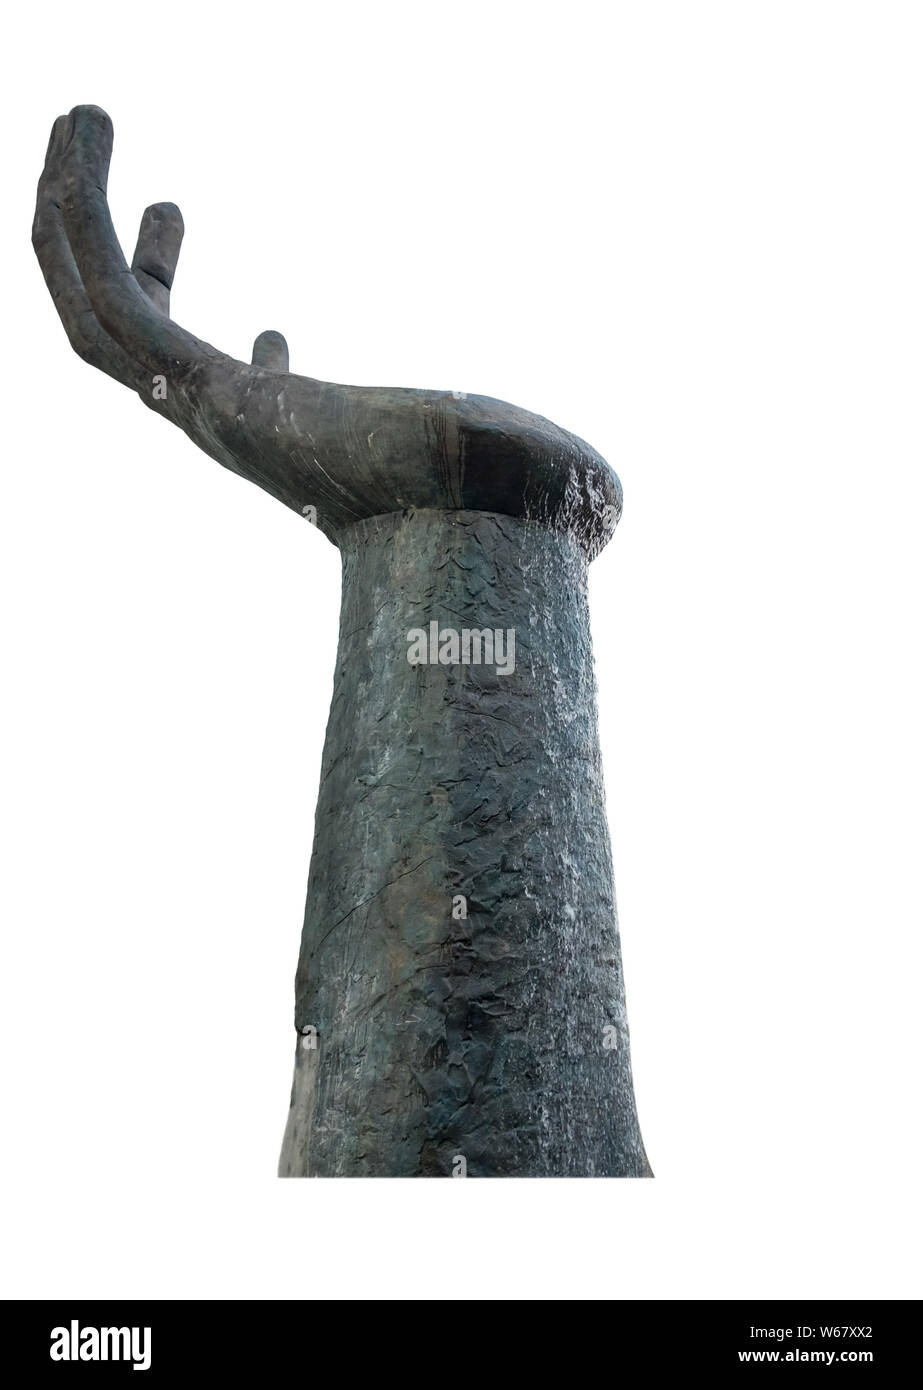 Large black statue hand symbol beg implore,isolated on background Stock Photo